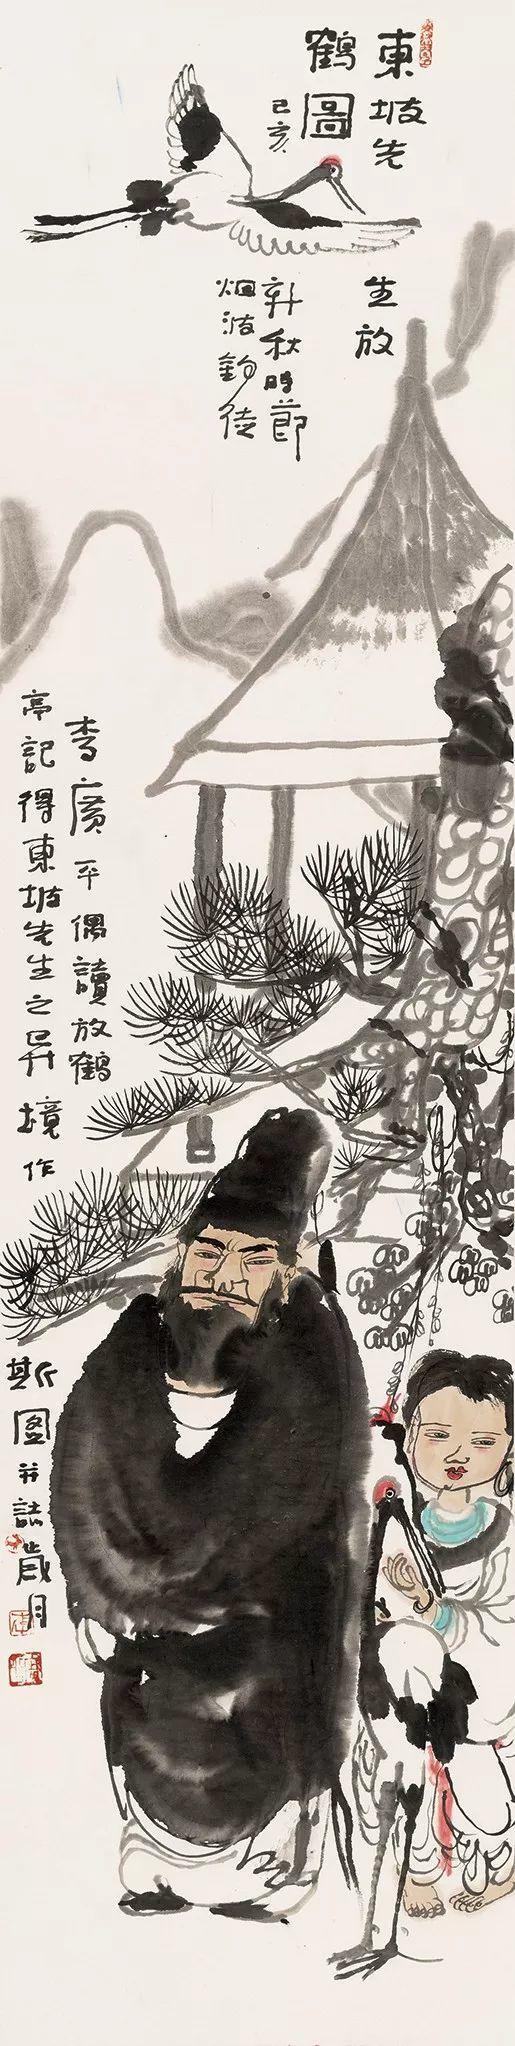 Painting of Su Shi Releasing A Crane by Li Guangping